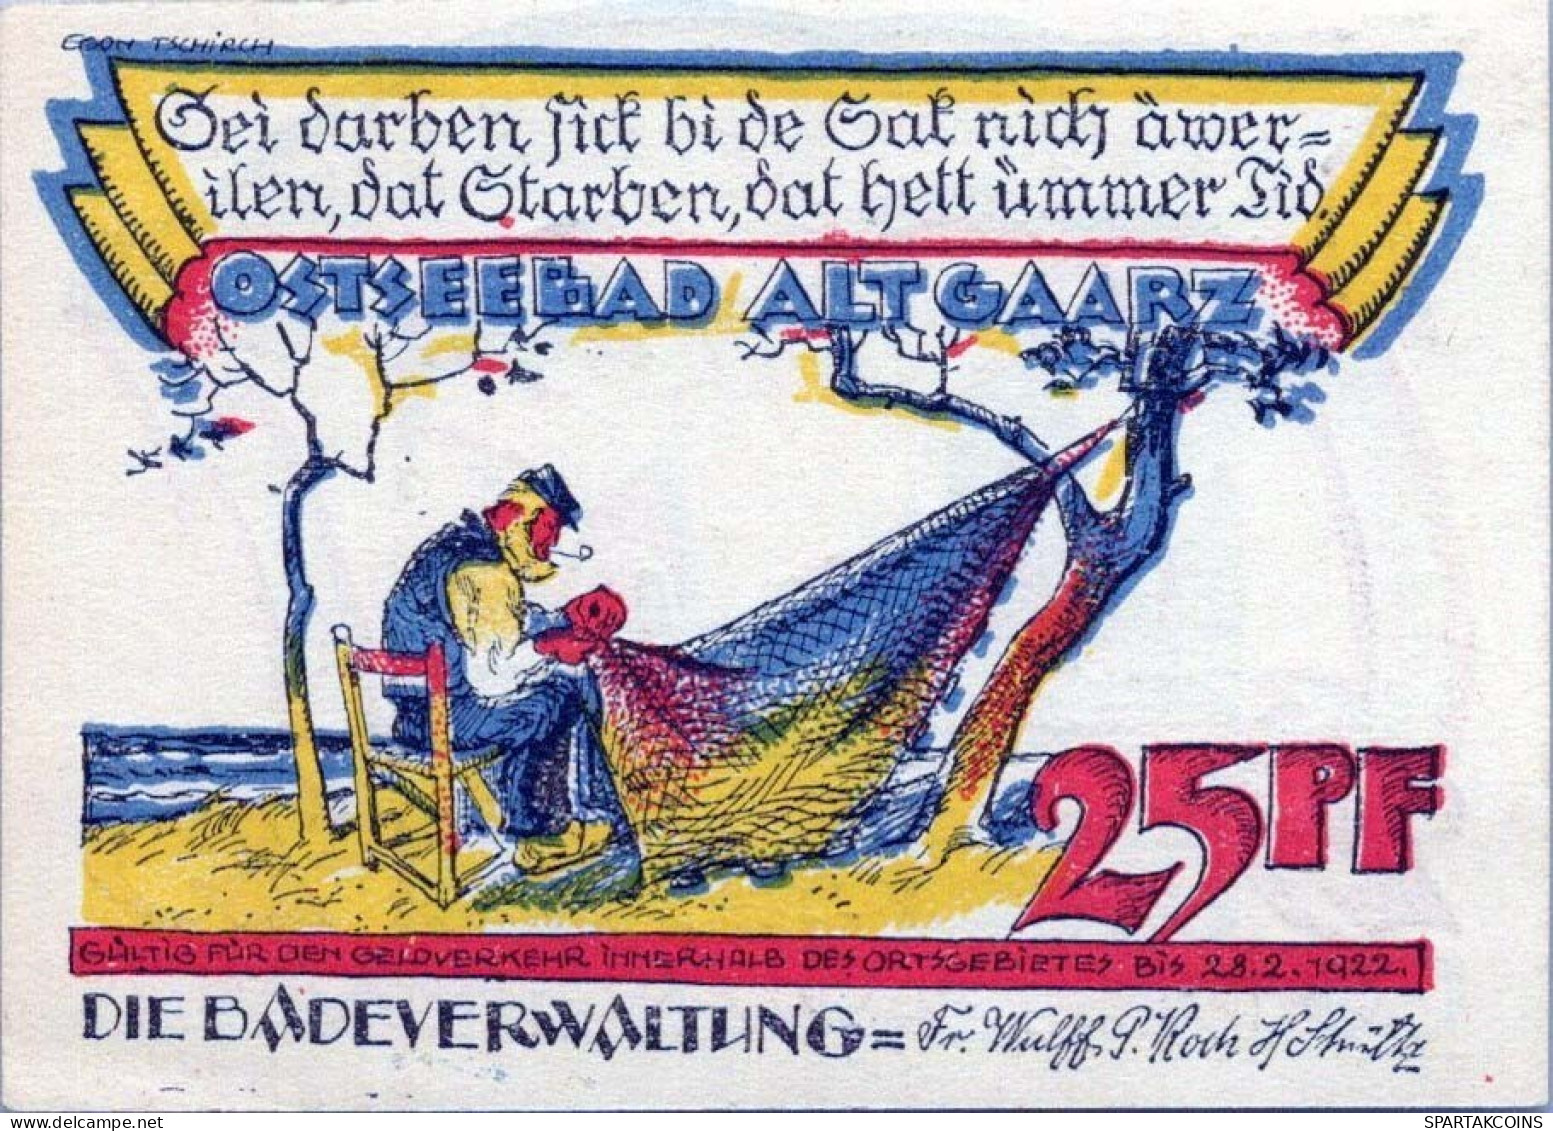 25 PFENNIG 1922 Stadt ALT GAARZ Mecklenburg-Schwerin UNC DEUTSCHLAND #PA047 - [11] Emissions Locales